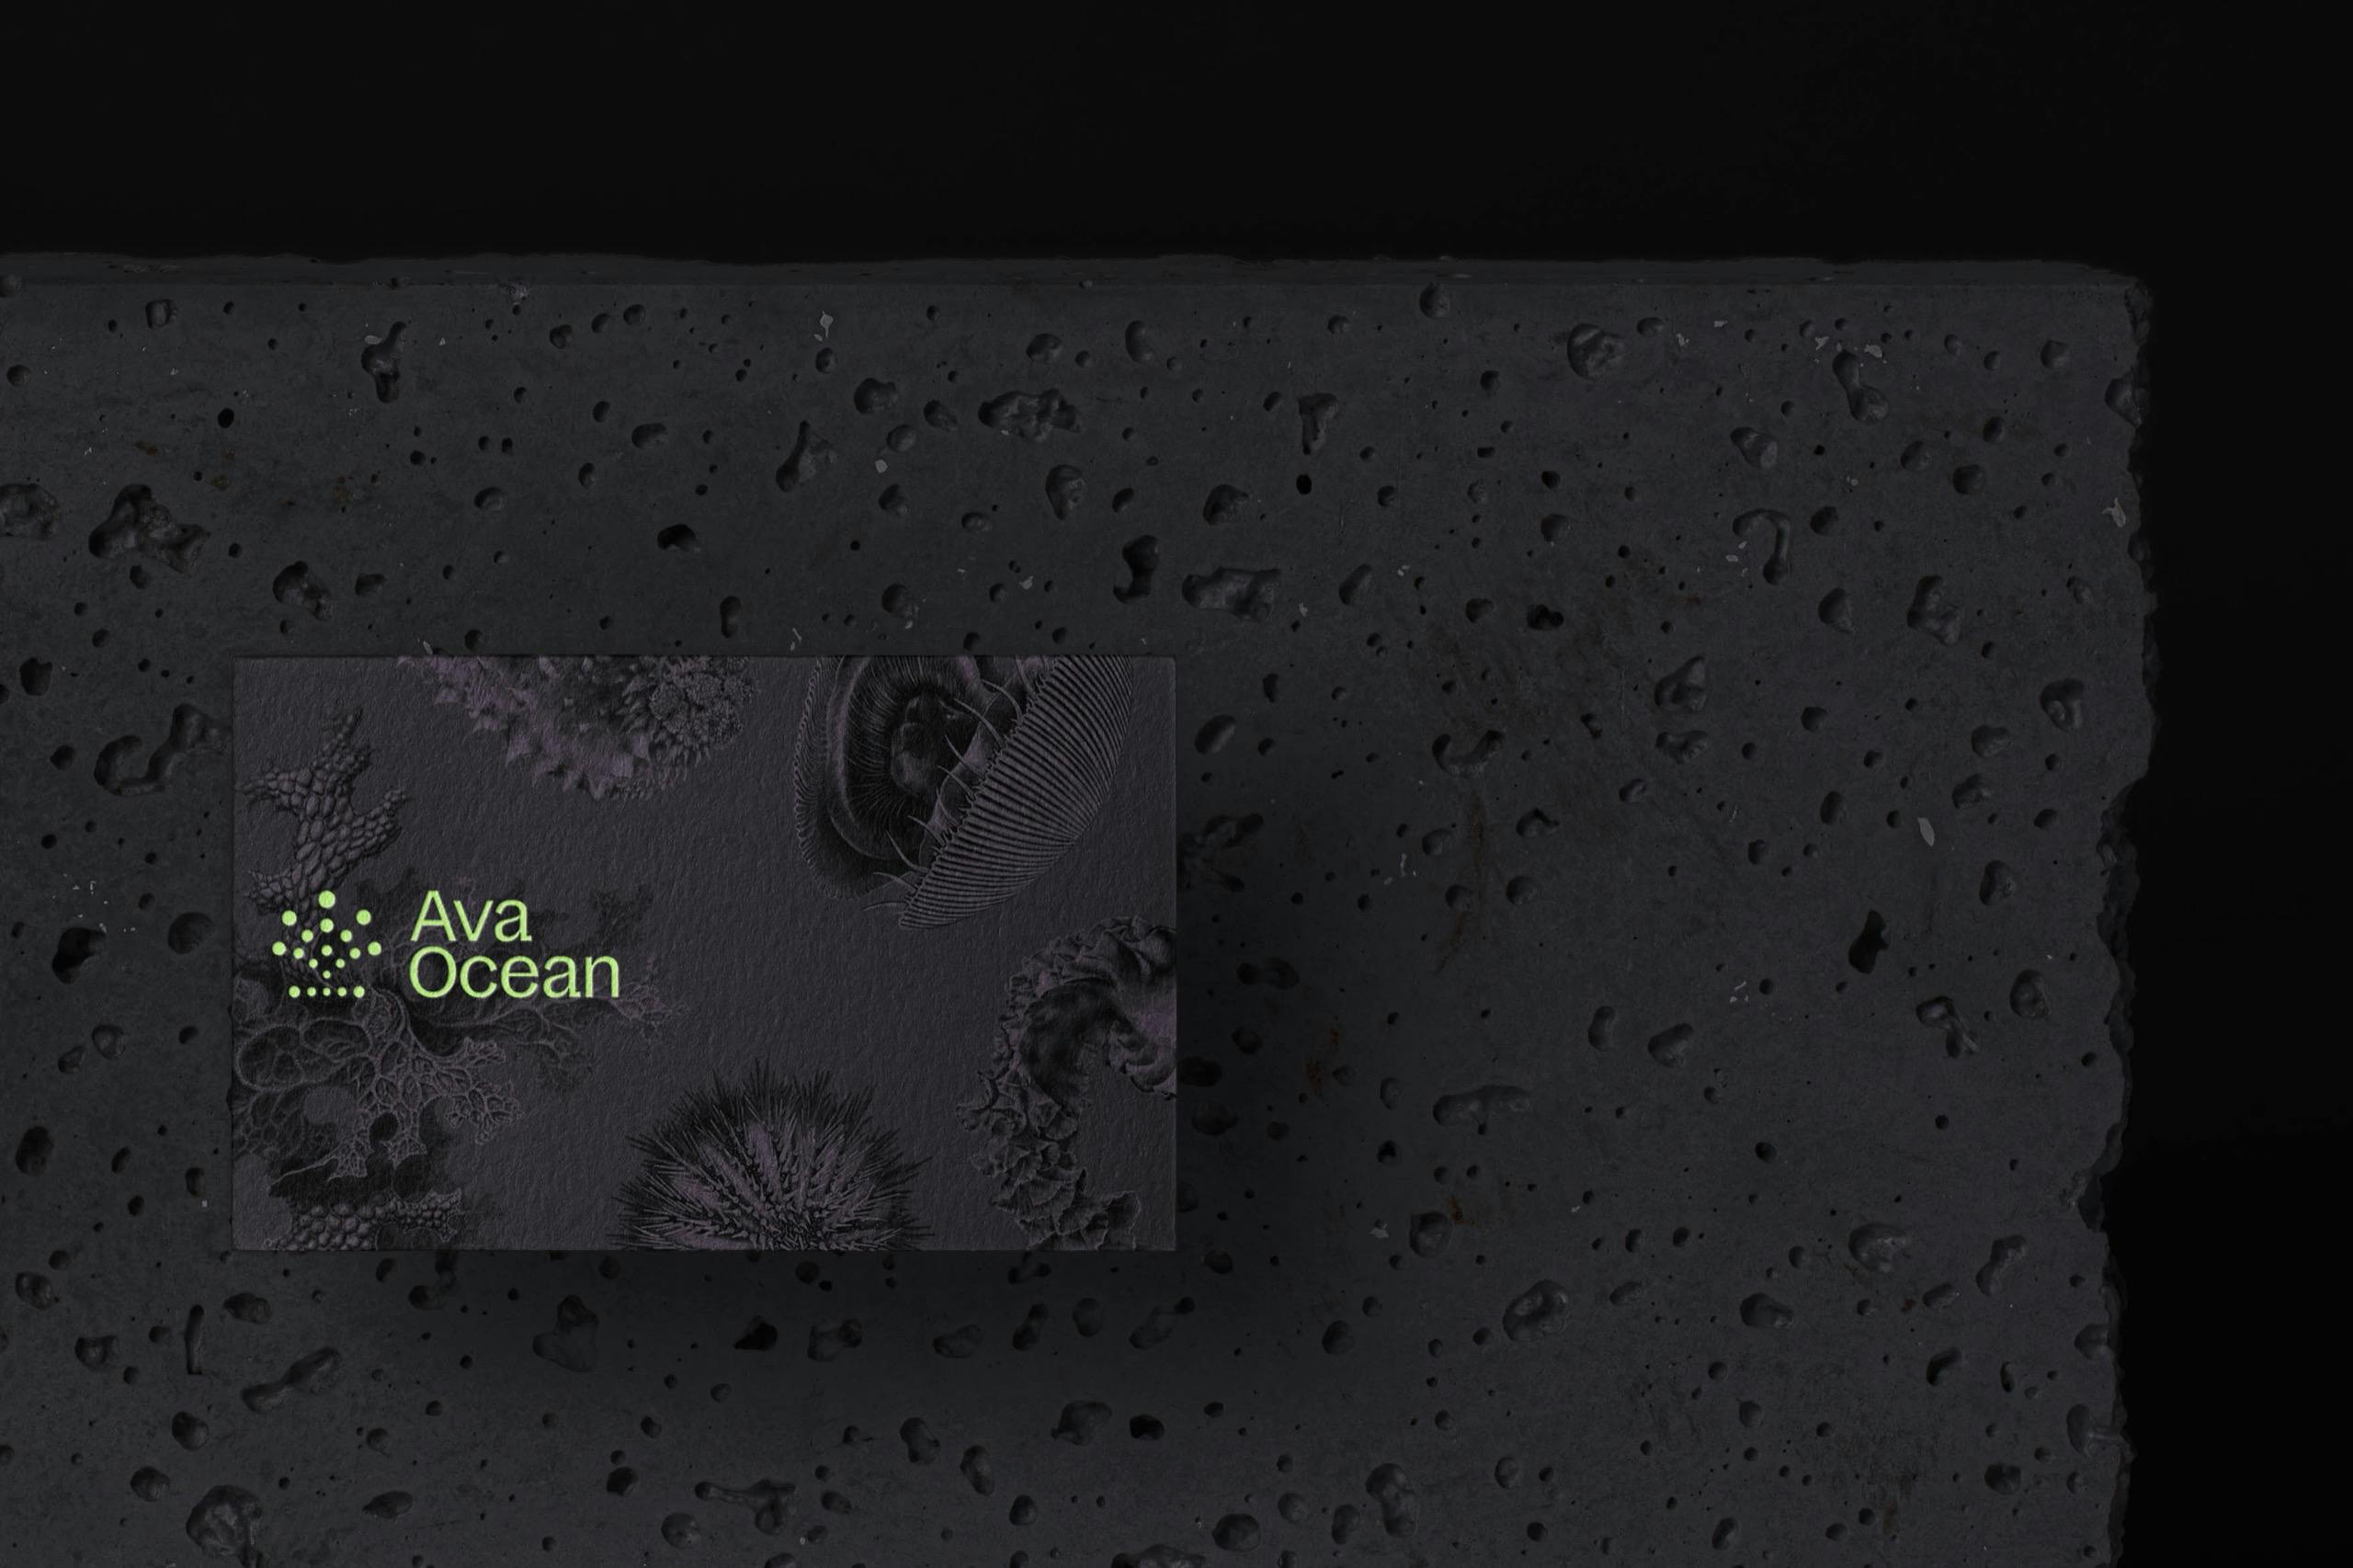 Ava Ocean business card